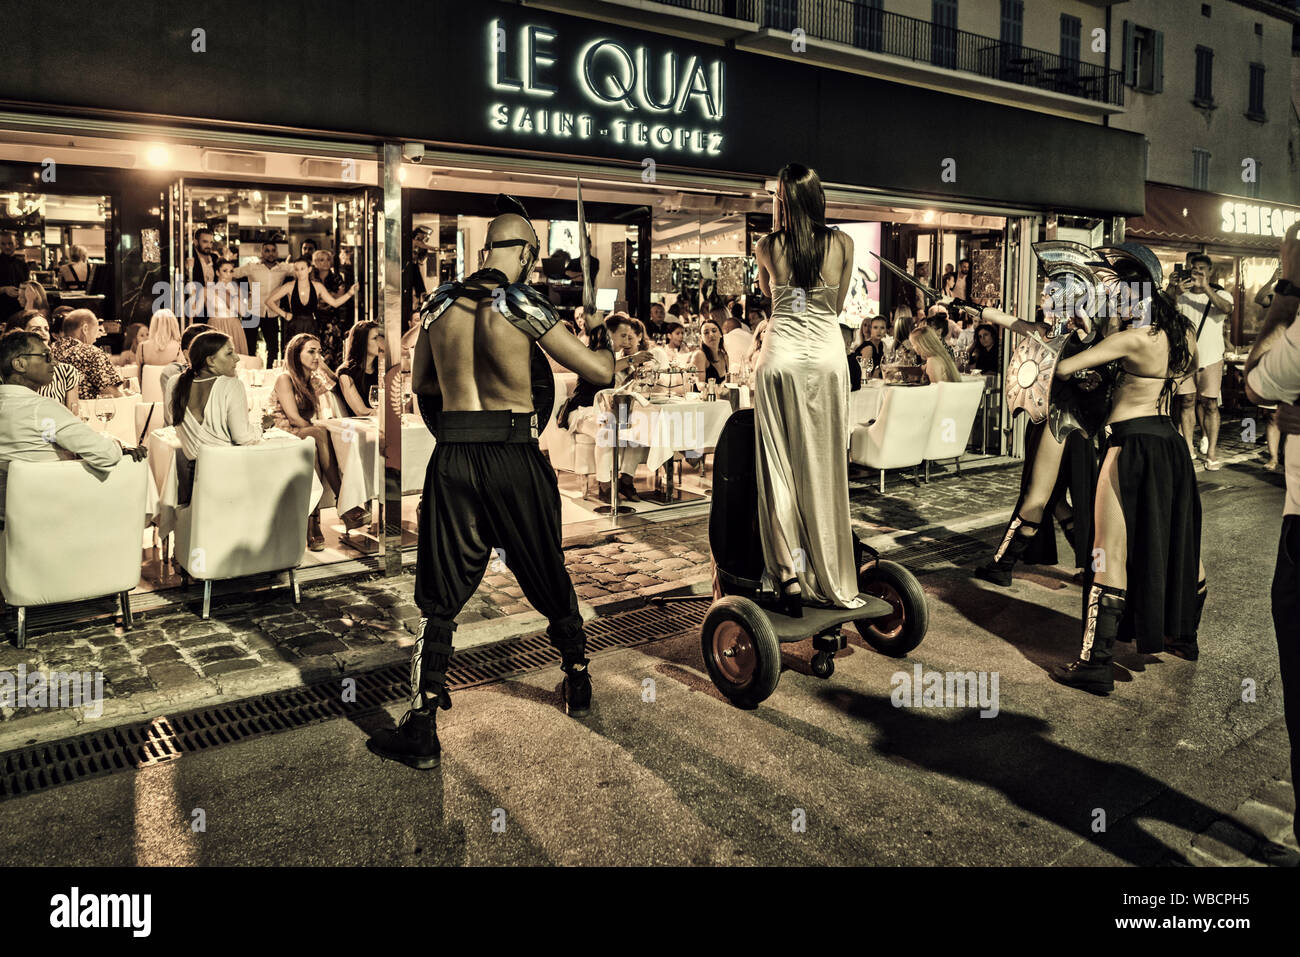 Dance performance, Le Quai Saint Tropez, Nightclub and Restaurant, Var, Cote d'Azur, south france, france, Stock Photo